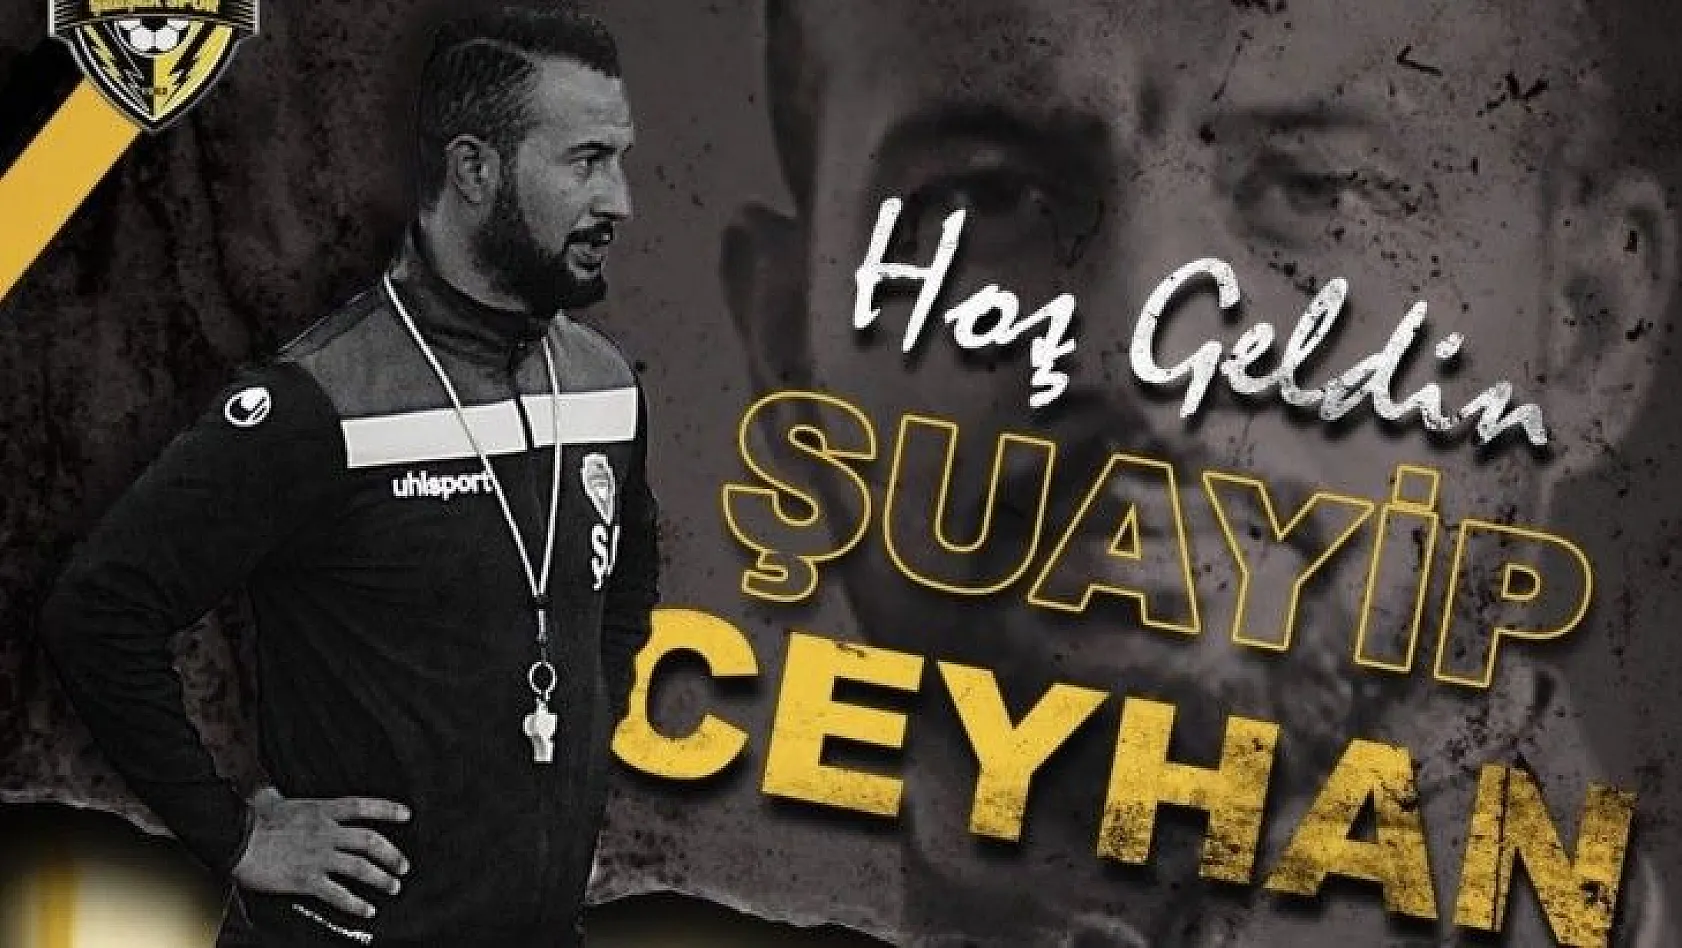 Kocasinan Şimşekspor'un yeni antrenörü Şuayip Ceyhan oldu